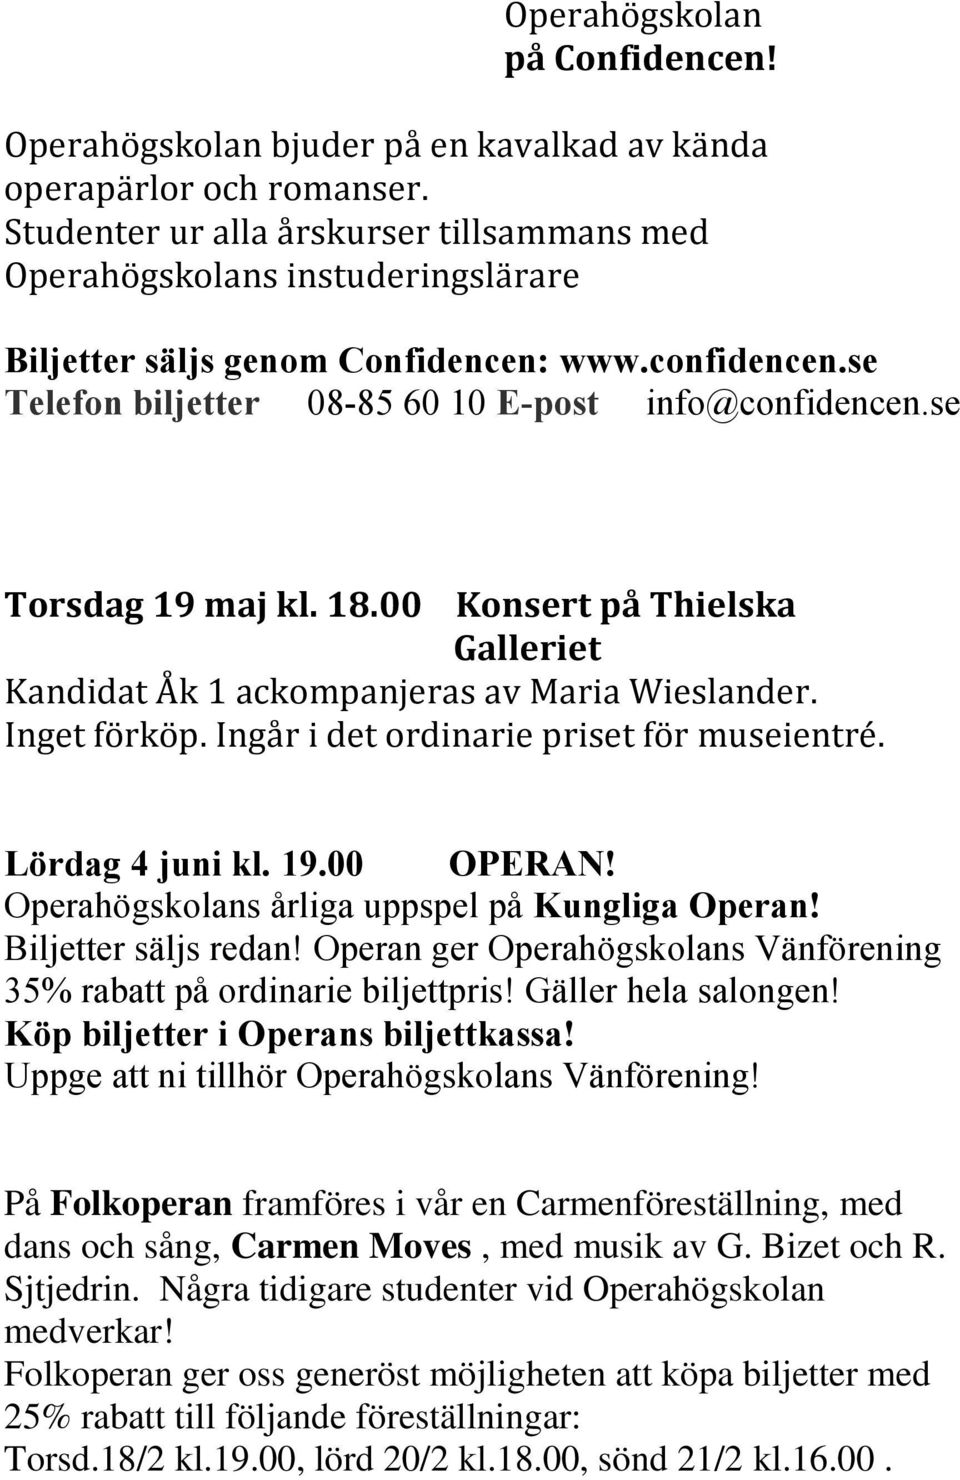 se Torsdag 19 maj kl. 18.00 Konsert på Thielska Galleriet Kandidat Åk 1 ackompanjeras av Maria Wieslander. Inget förköp. Ingår i det ordinarie priset för museientré. Lördag 4 juni kl. 19.00 OPERAN!